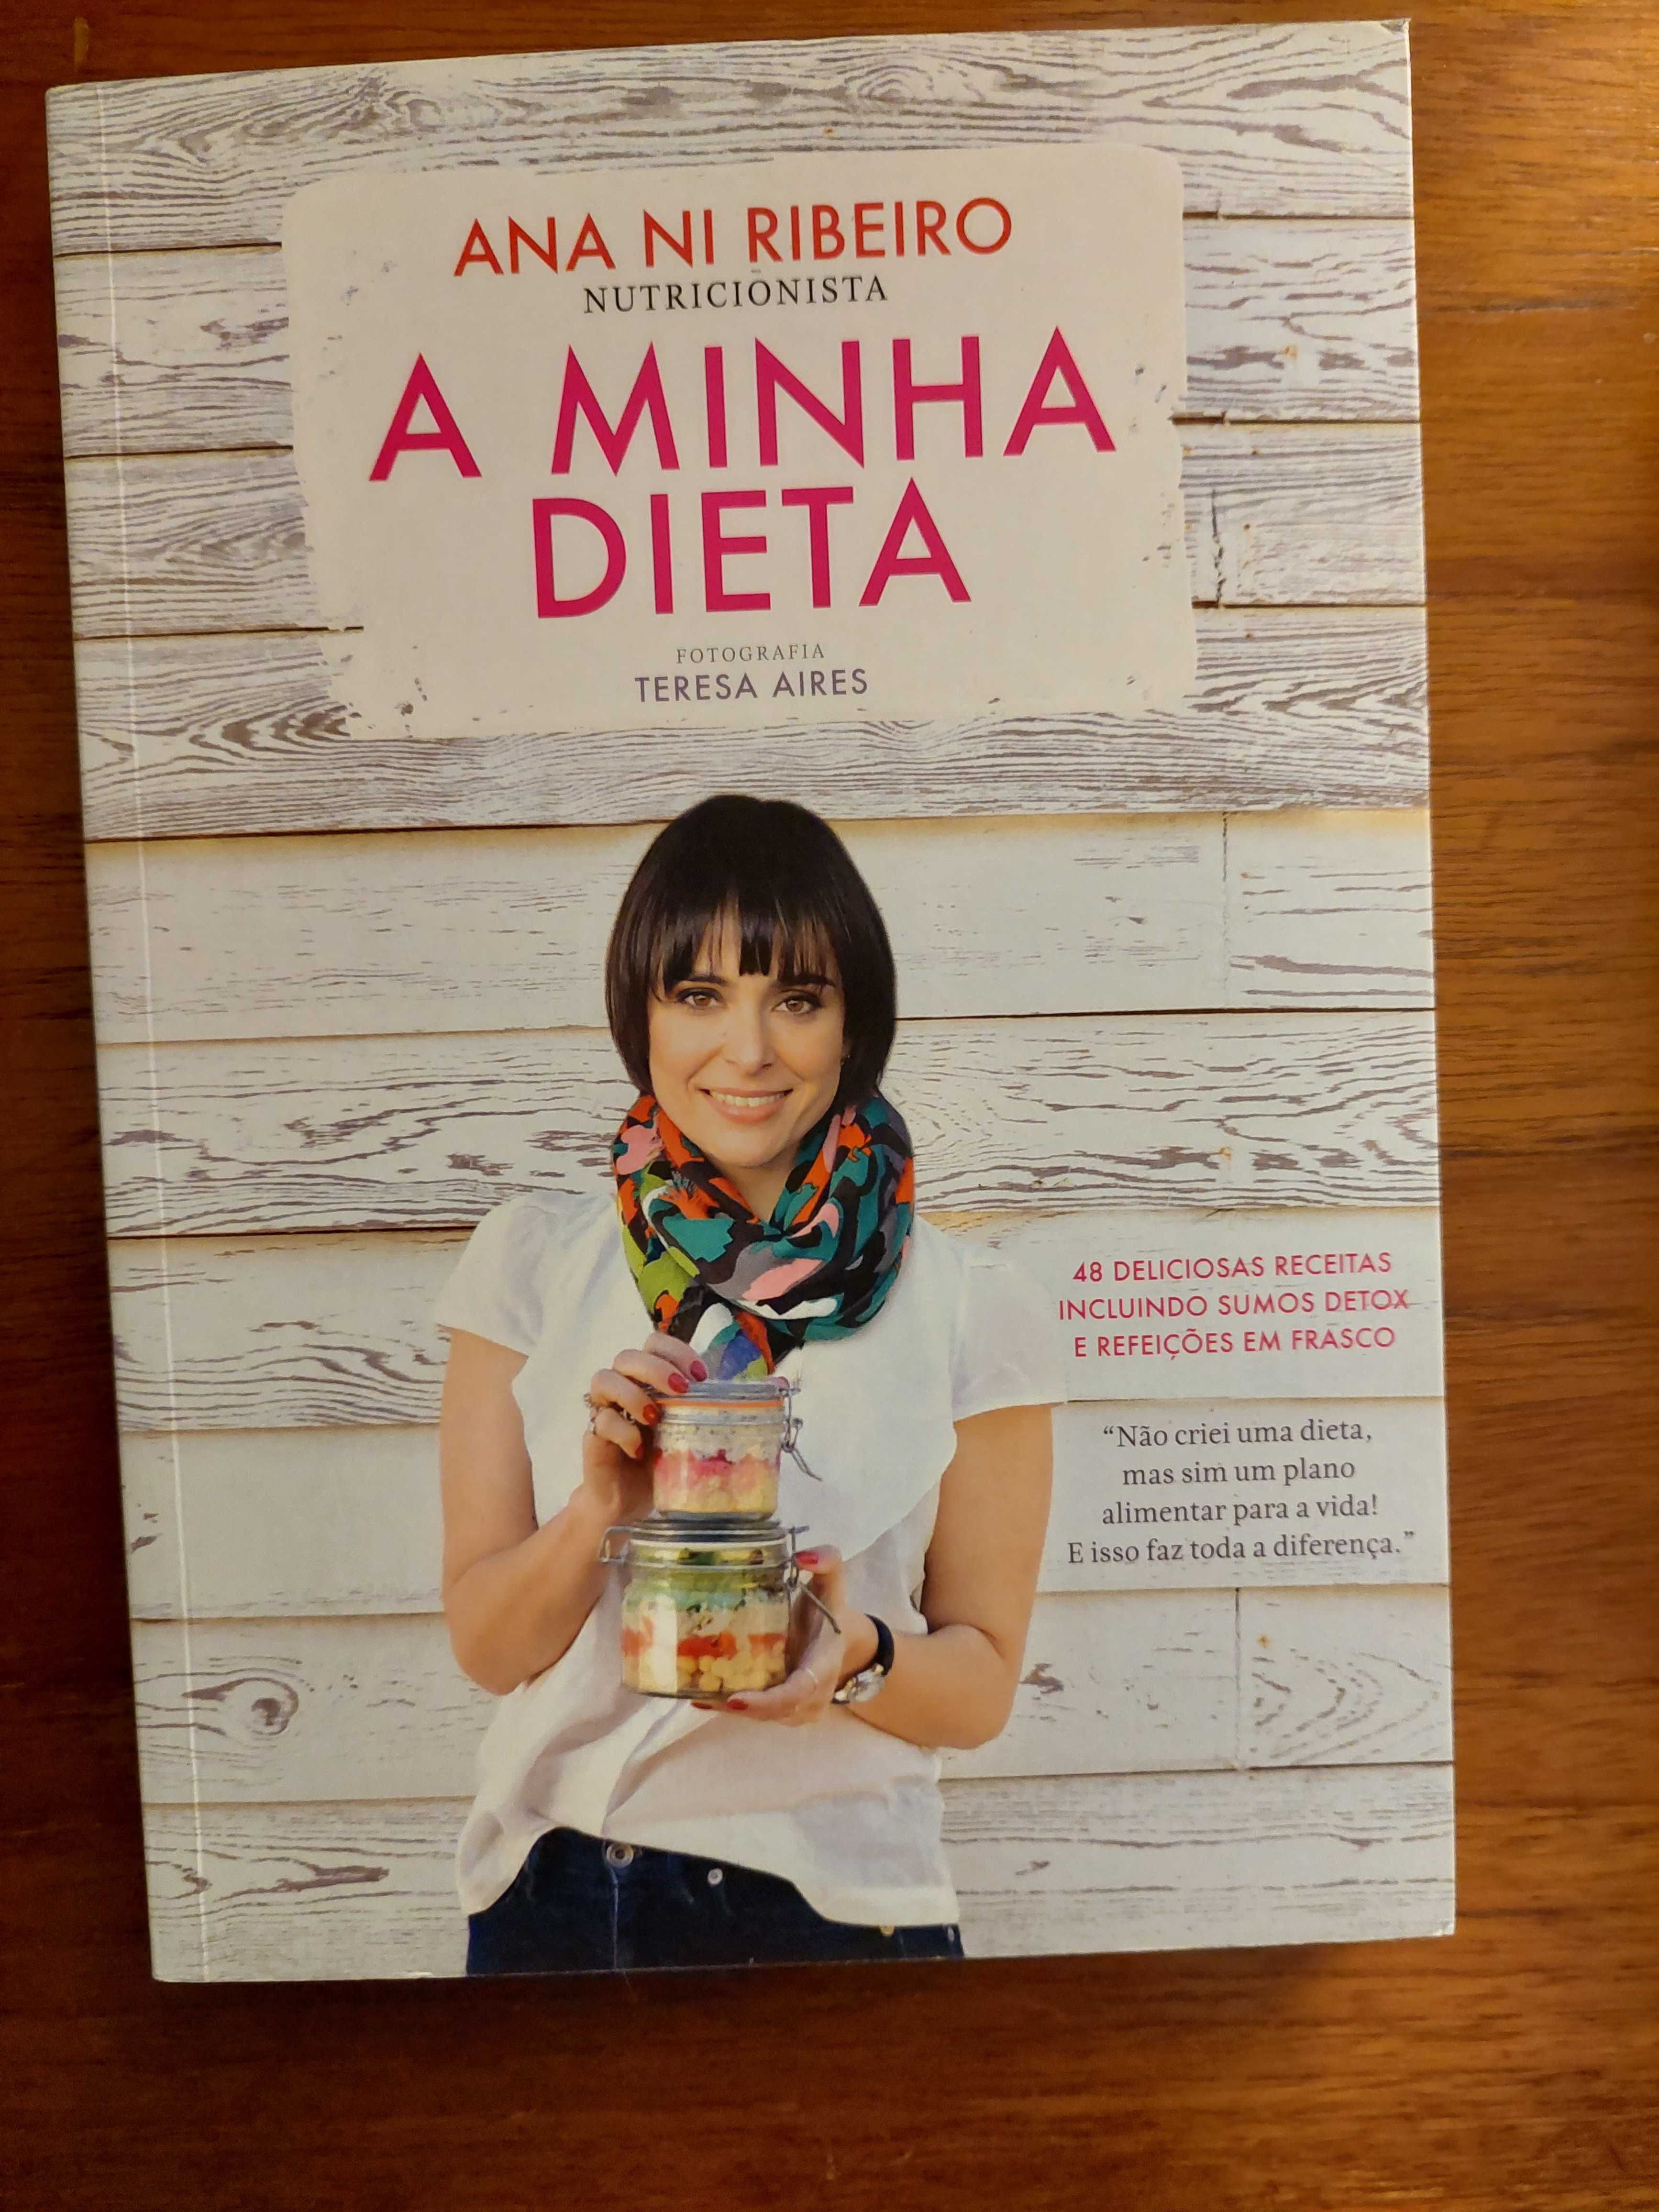 Livro "A Minha Dieta" por Ana Ni Ribeiro